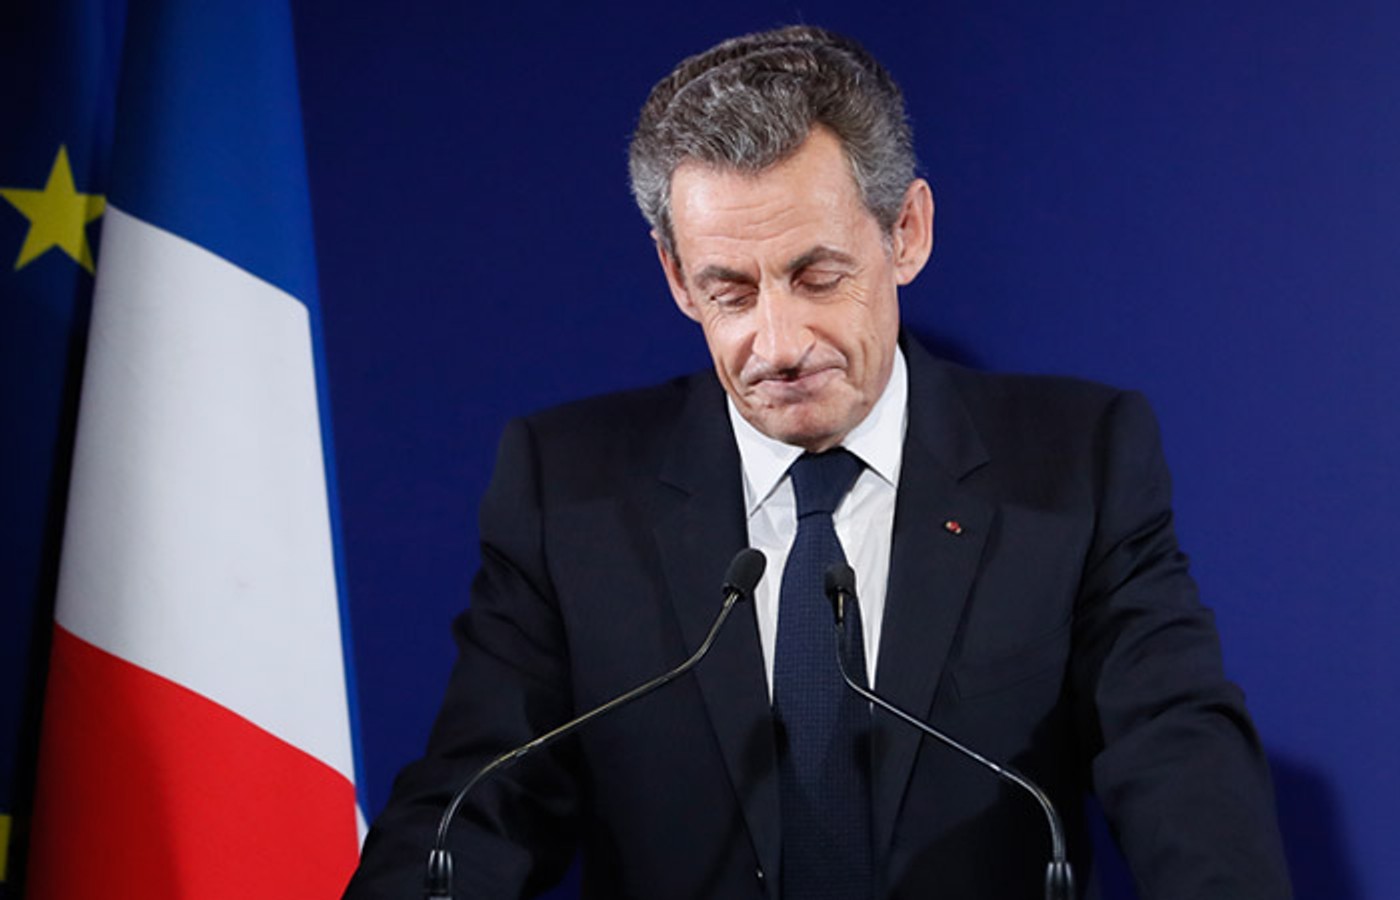 Ніколя Саркозі пред'явлено звинувачення в участі в злочинному співтоваристві